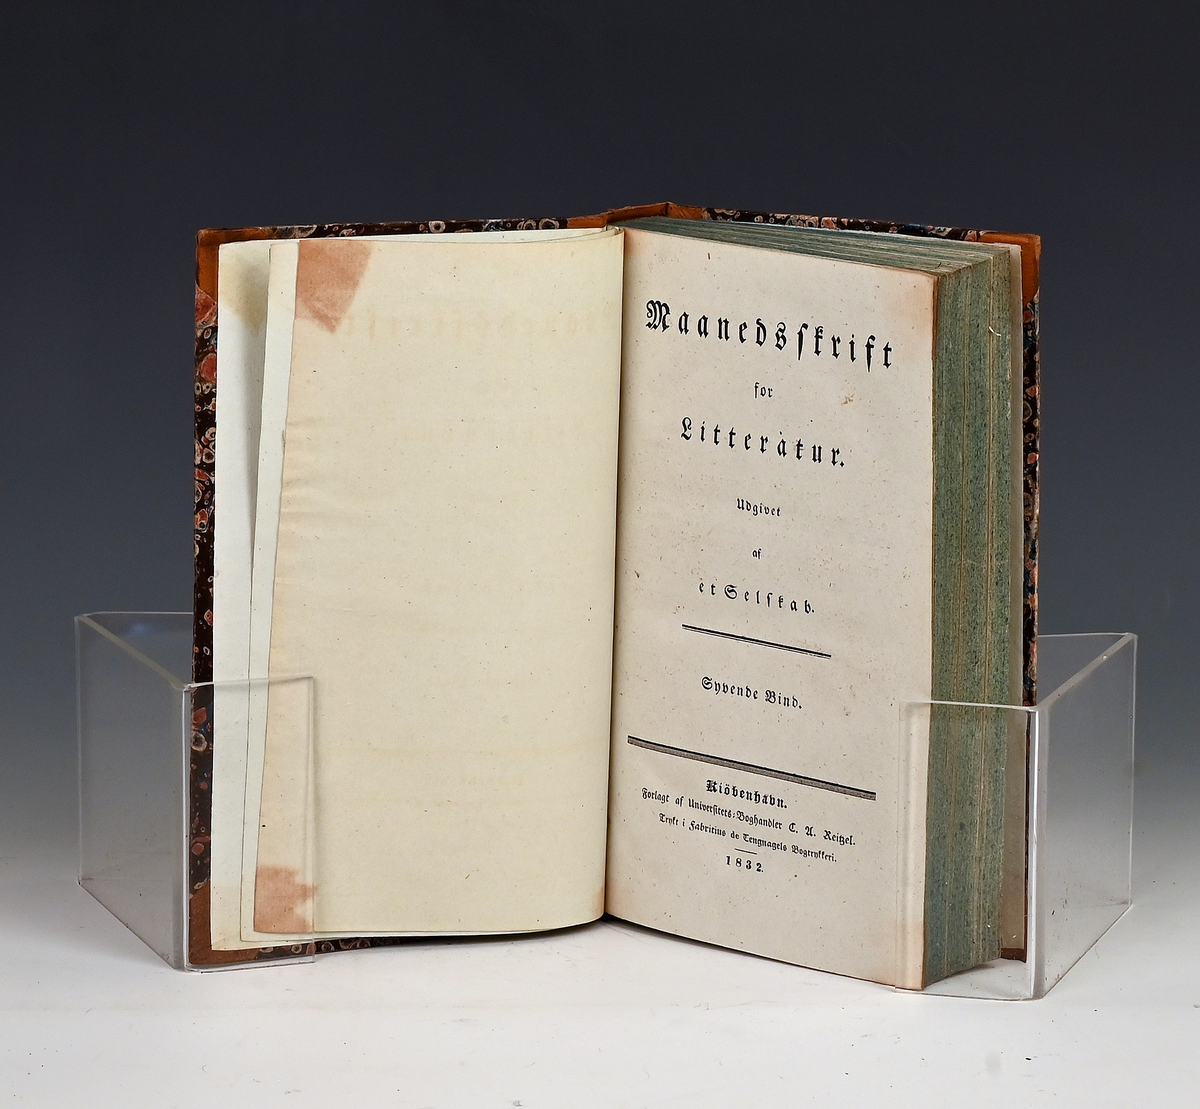 Maanedsskrift for litteratur. Sjette bind. Kbhv. 1831.
